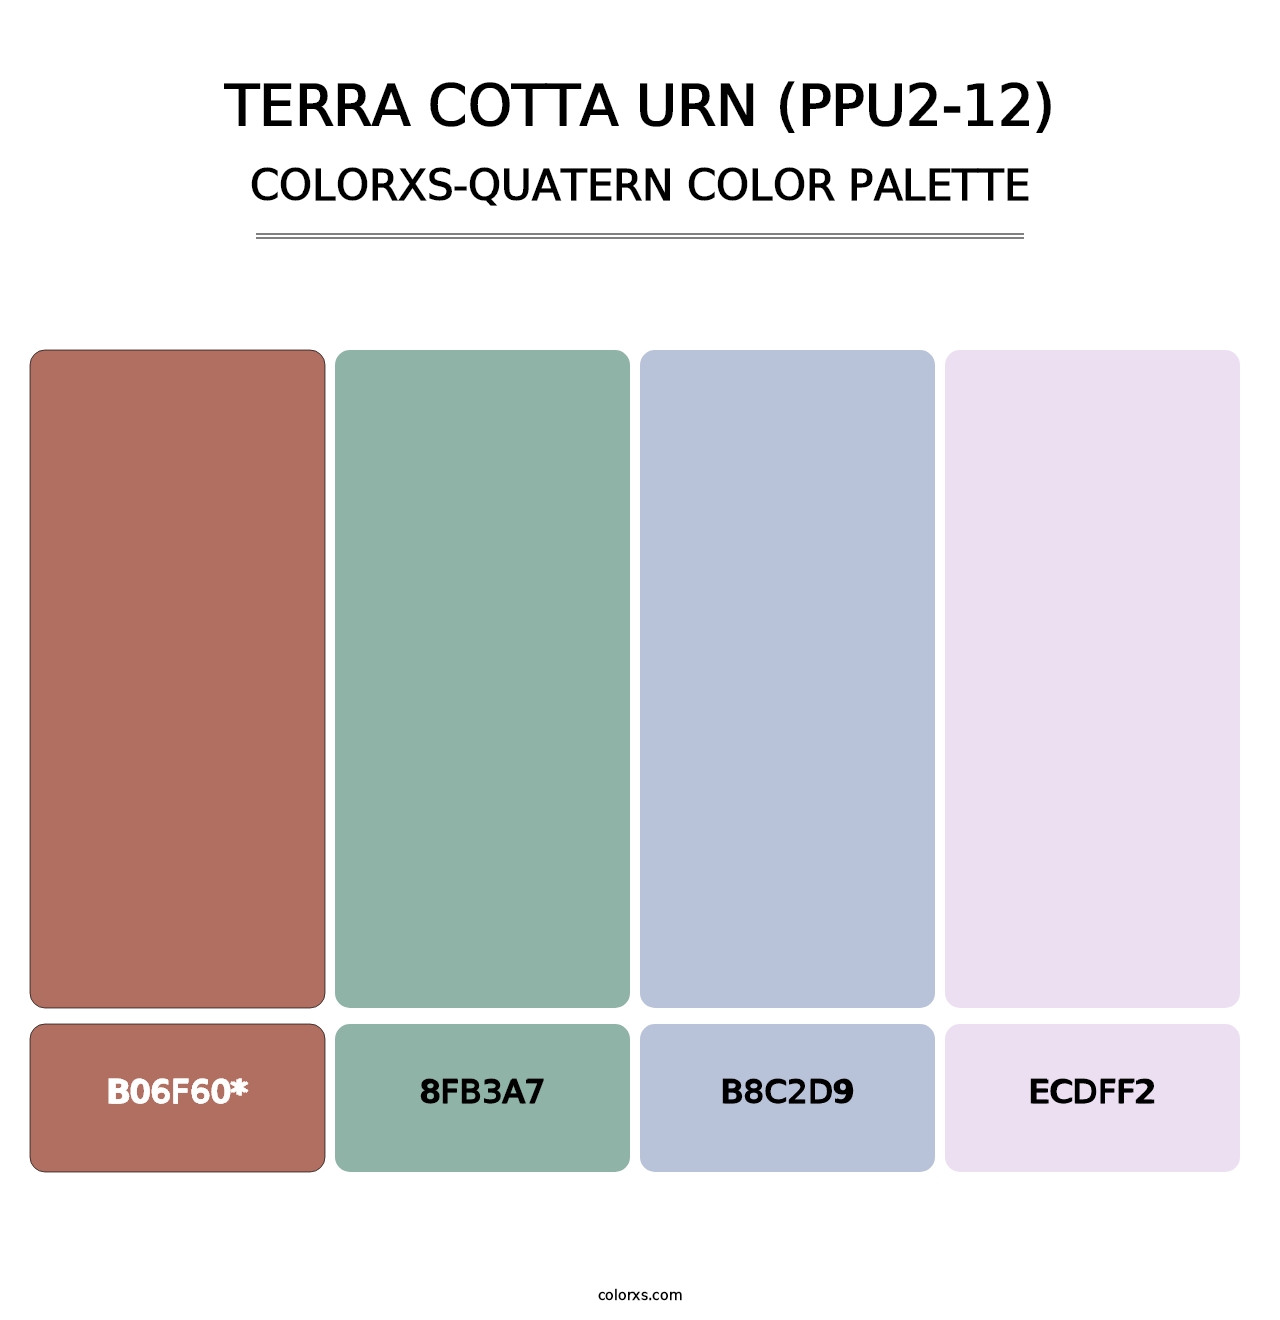 Terra Cotta Urn (PPU2-12) - Colorxs Quatern Palette